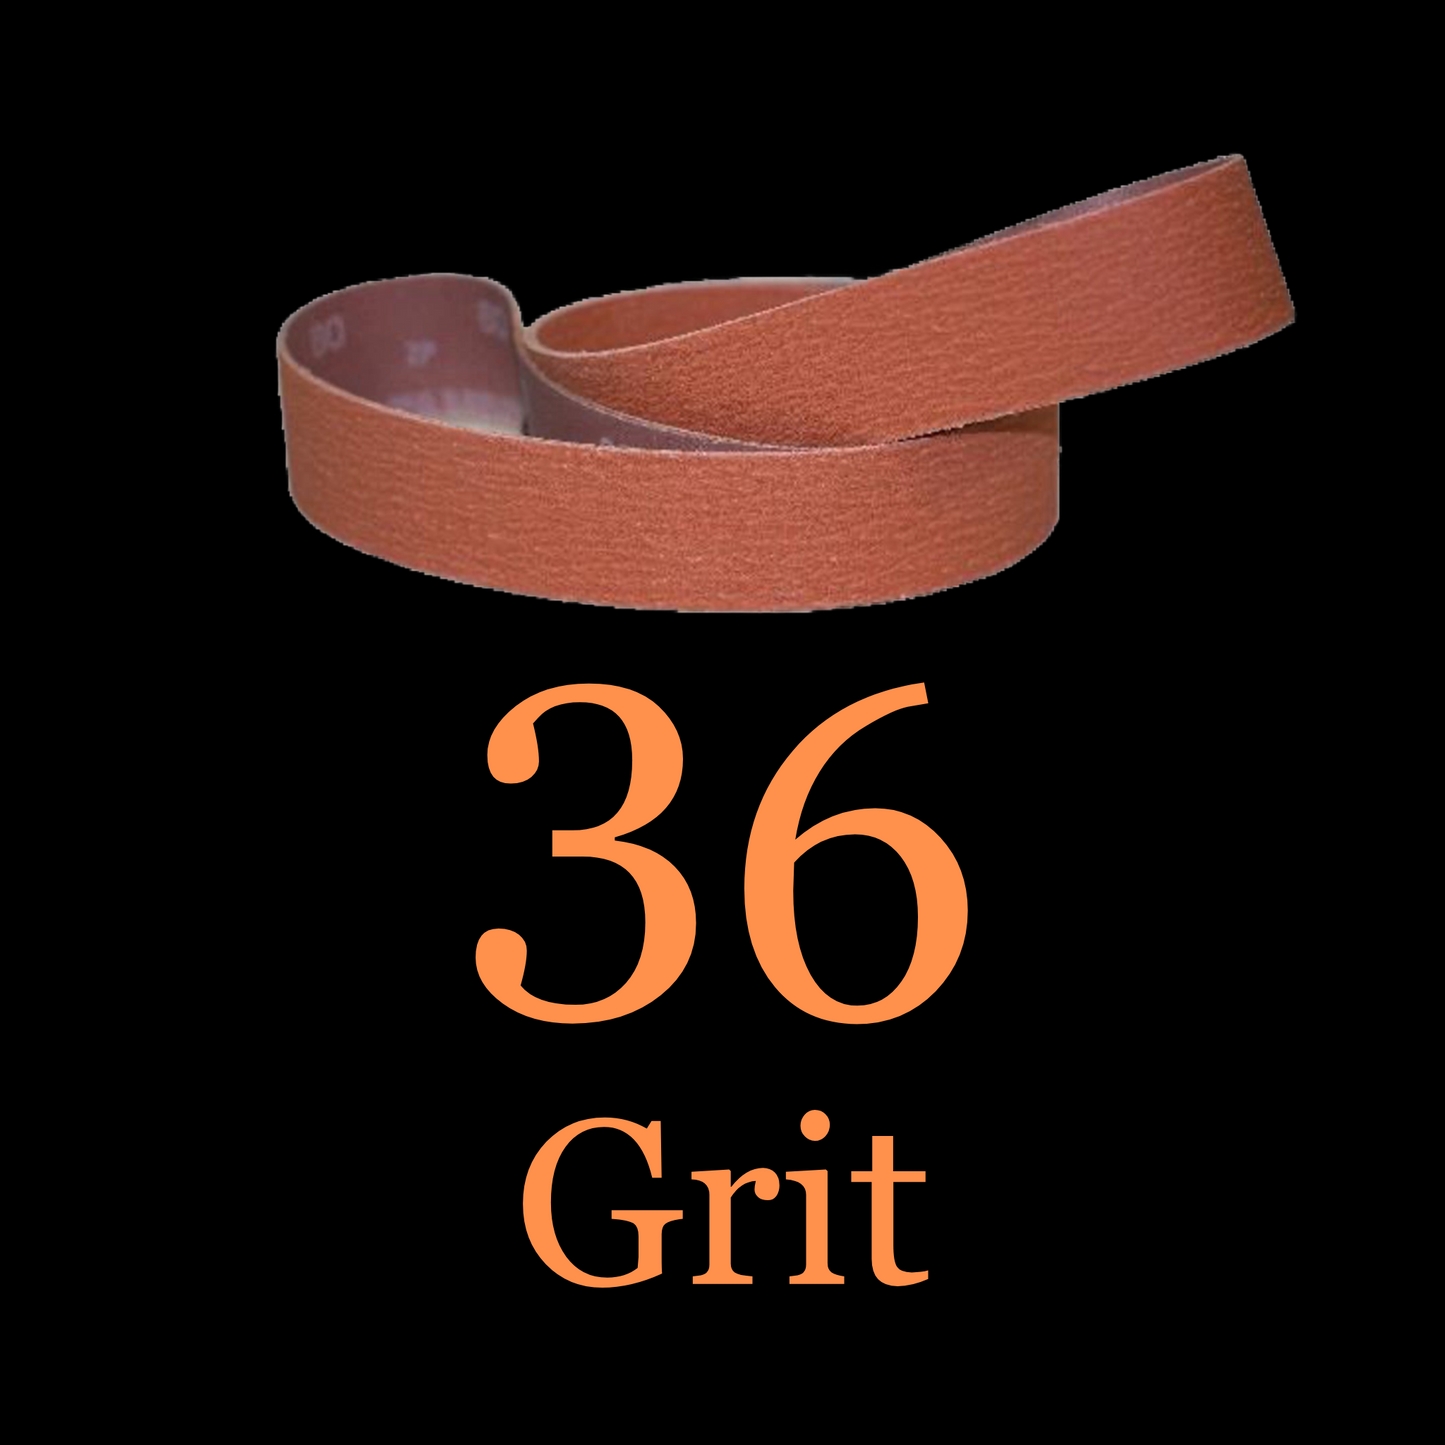 2” x 42” Ceramic Blaze Grinder Belt 36 Grit